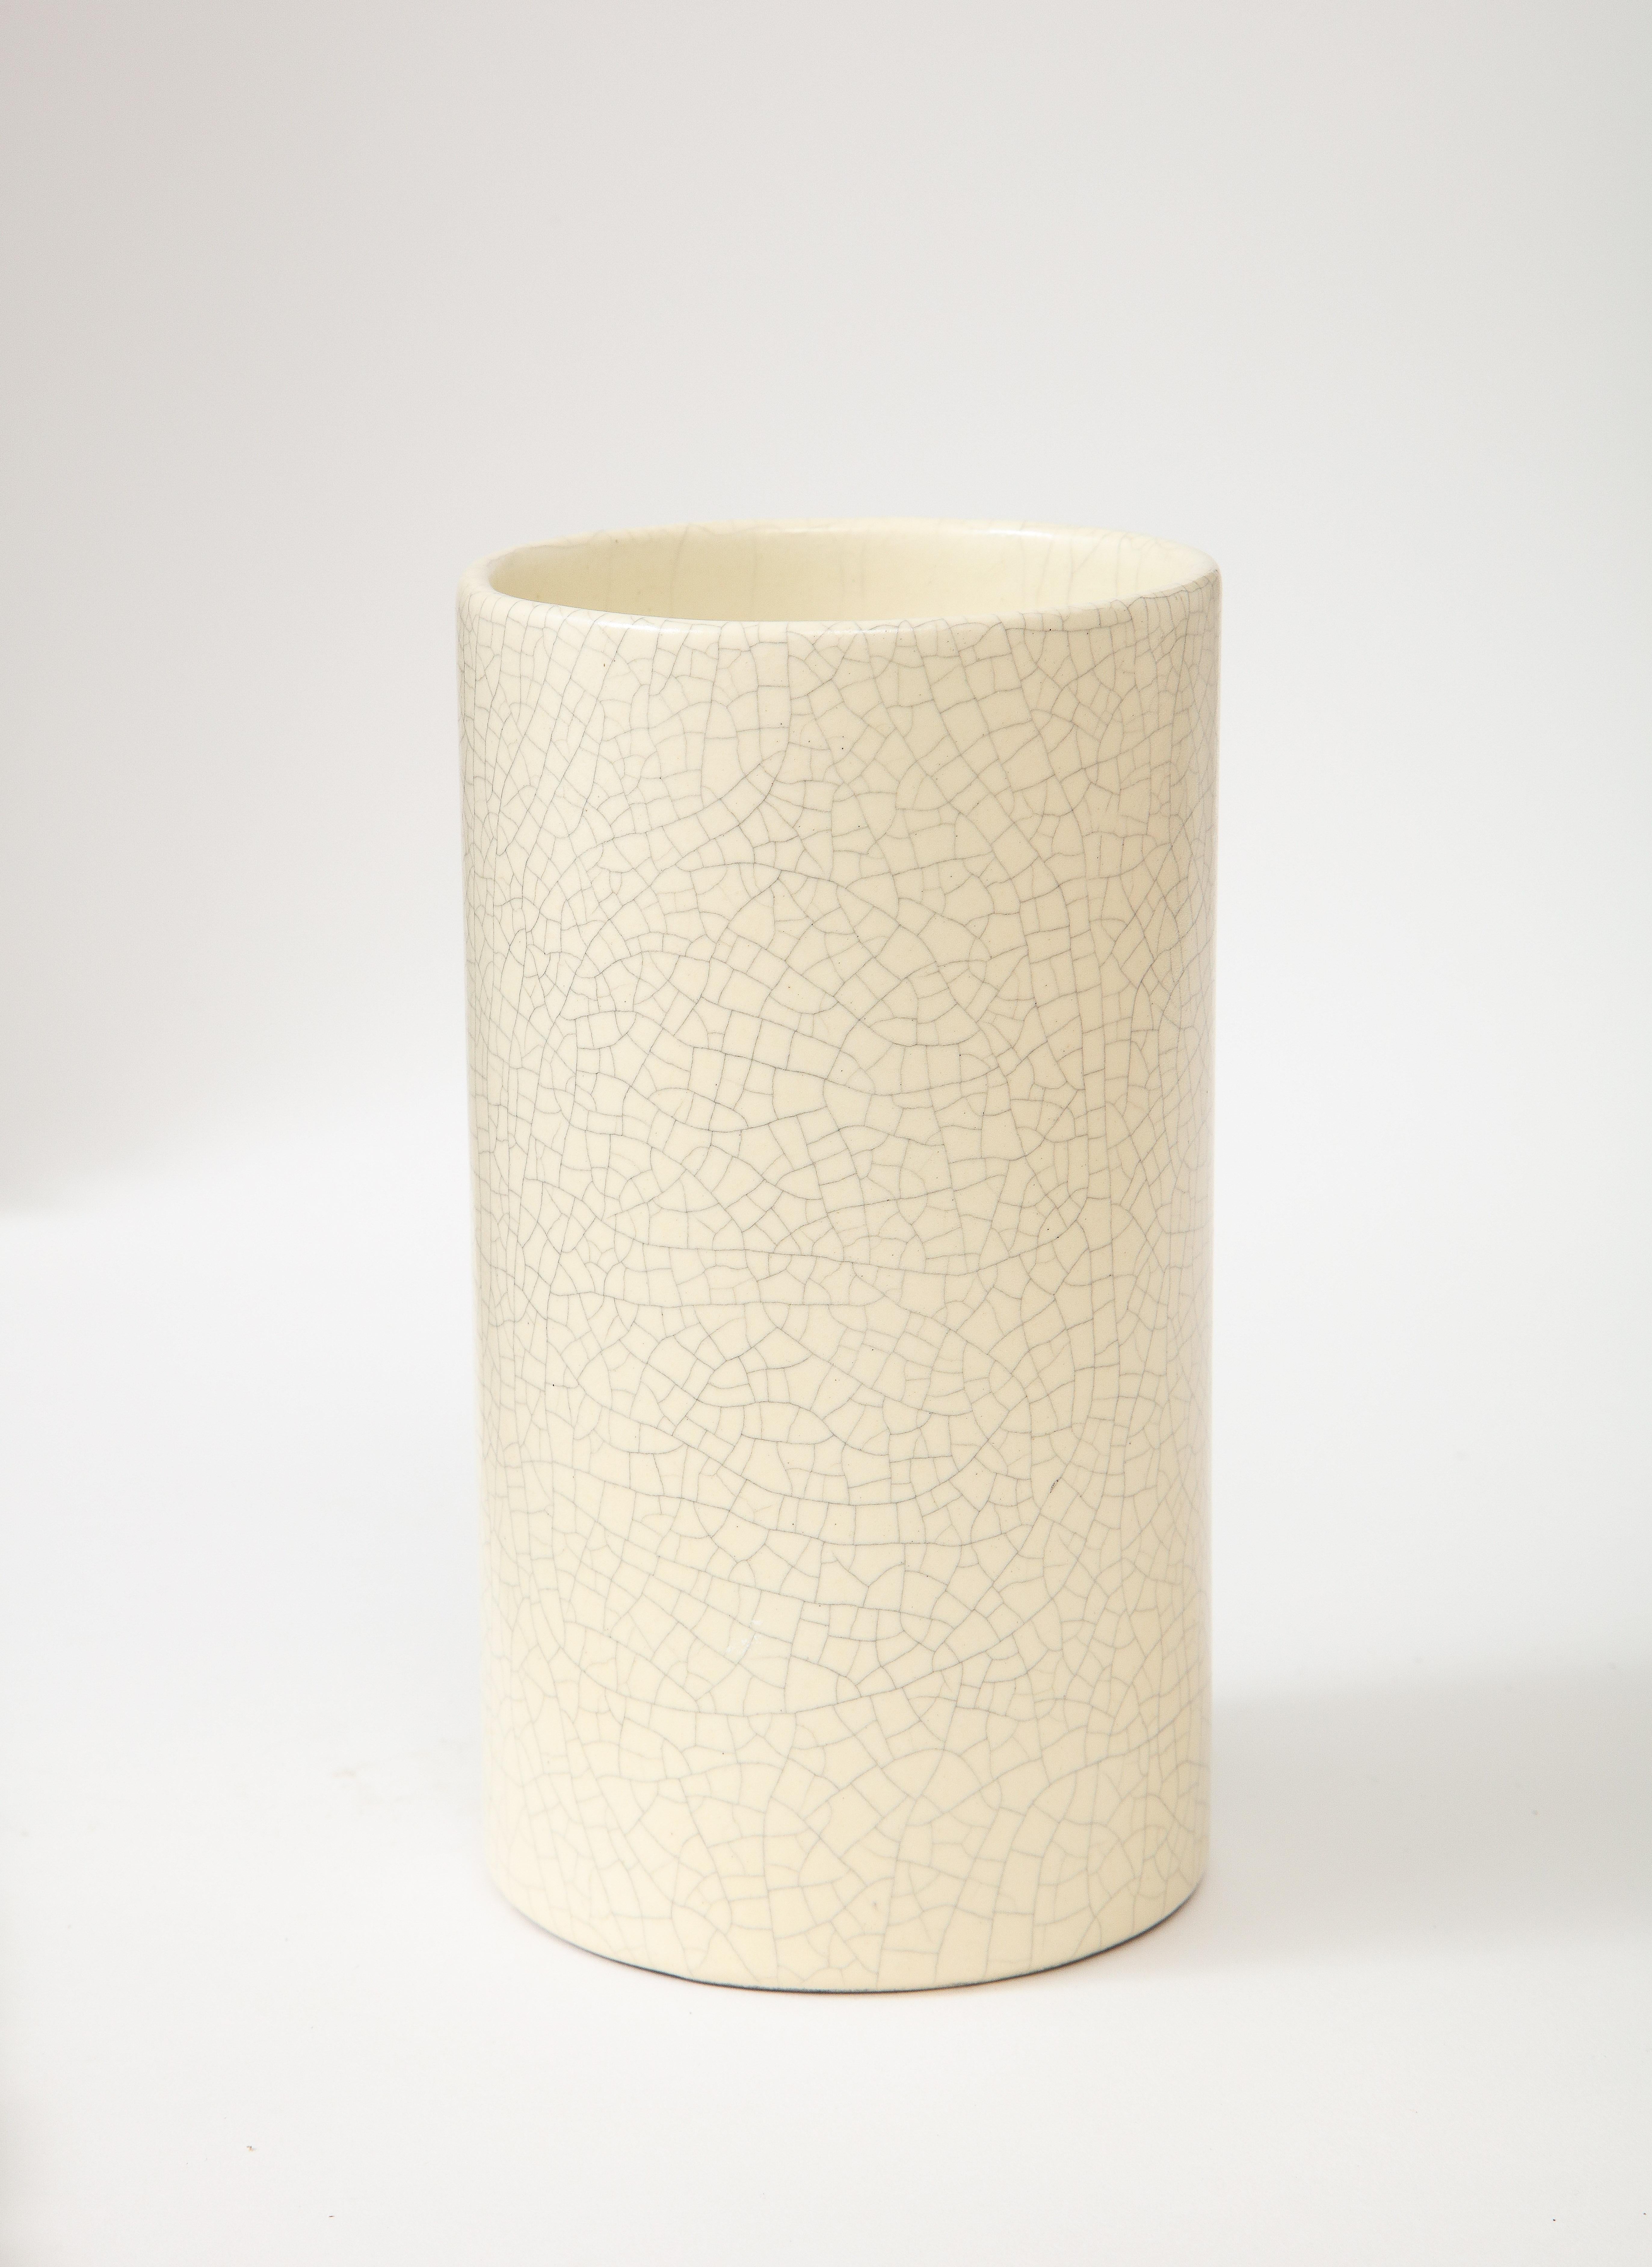 Off-White Crackle Vase, France, c. 1960 For Sale 1